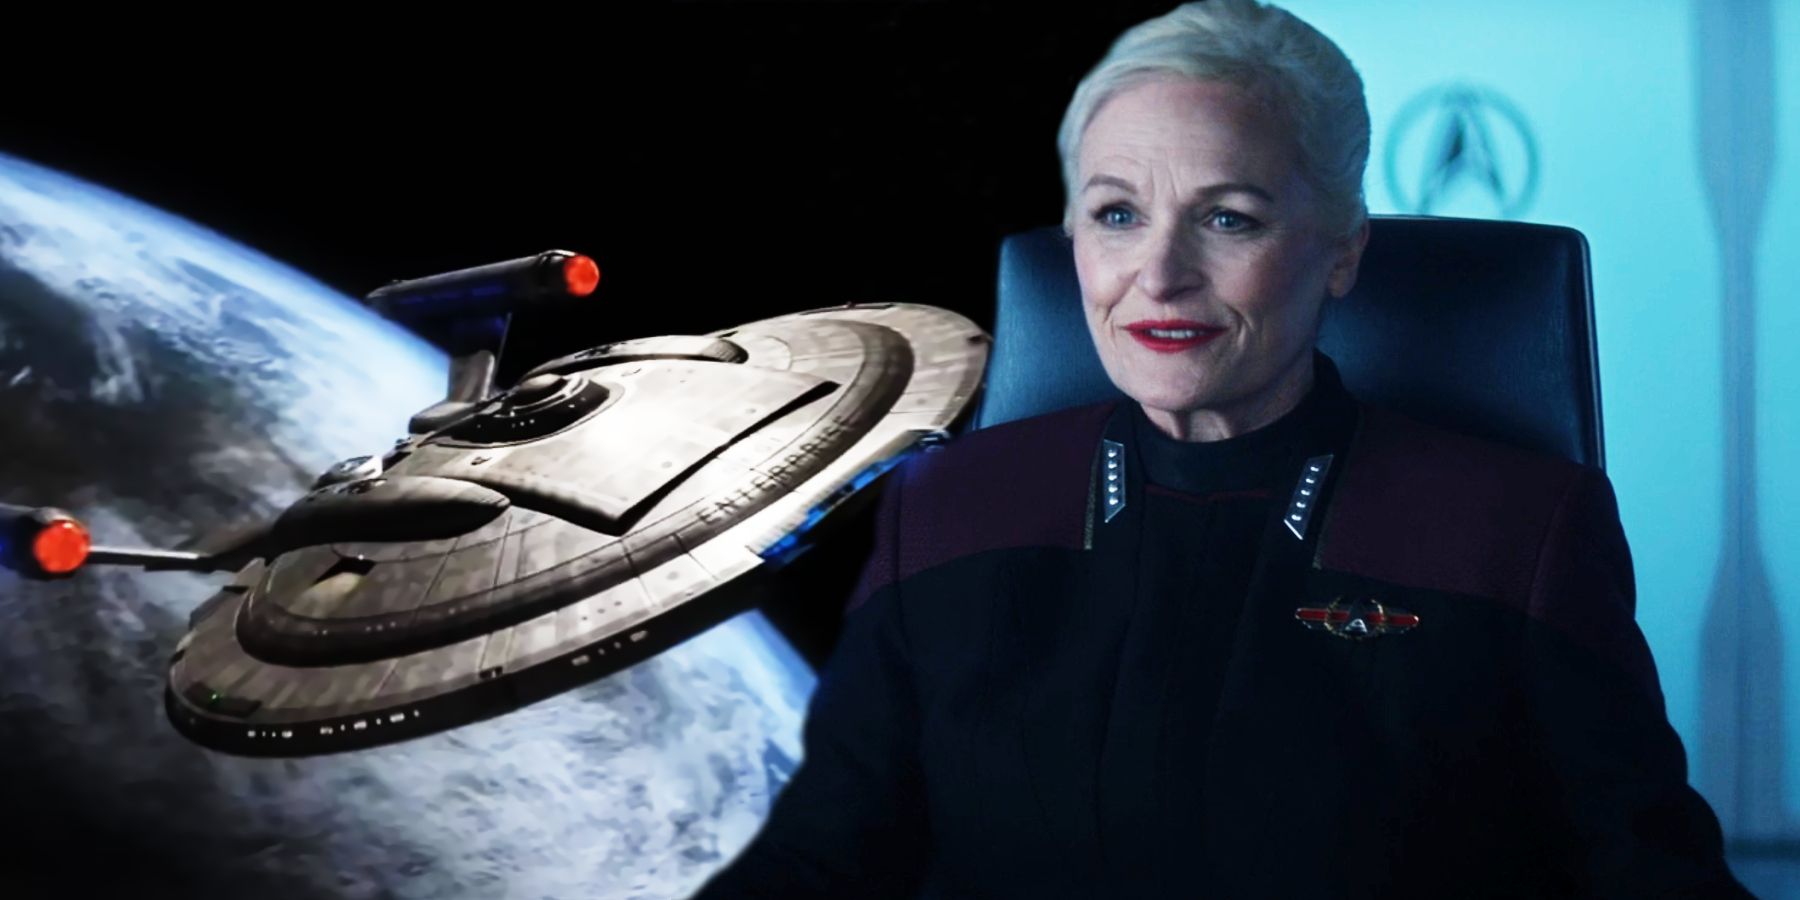 El día de la frontera de Picard finalmente le da a Star Trek: Enterprise su merecido